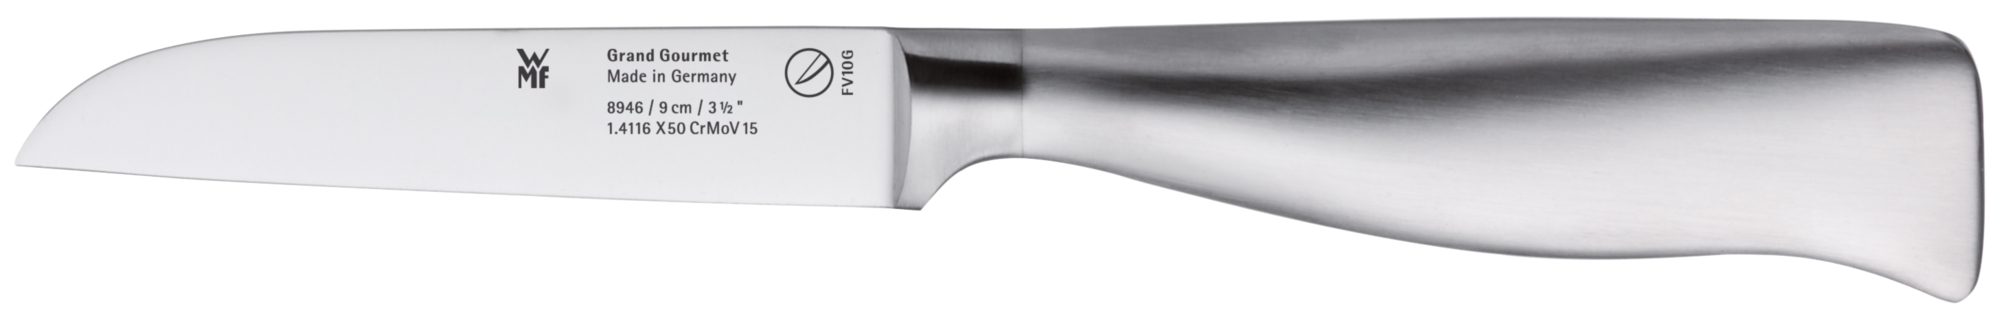 Овощной нож Grand Gourmet 9 см нож для чистки овощей comfort k1298114